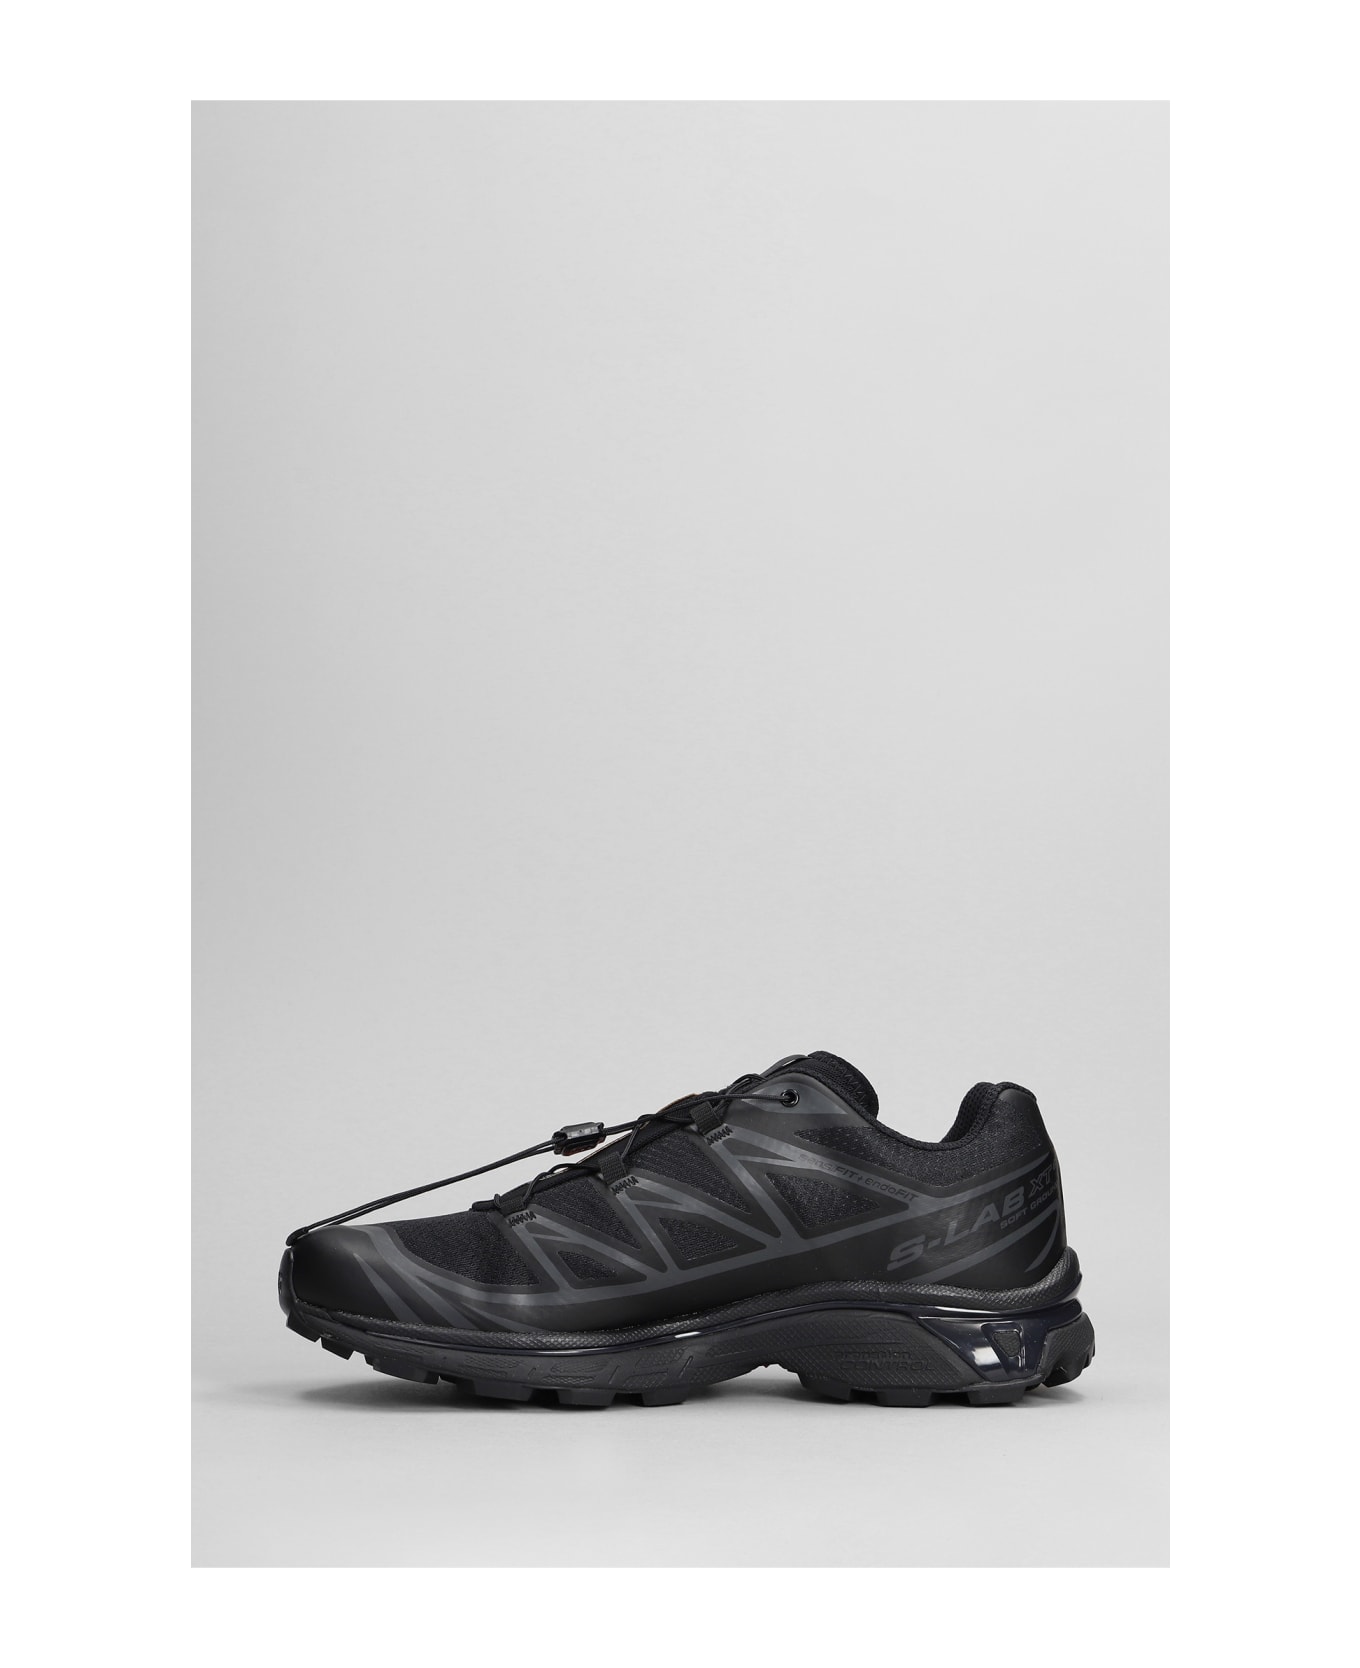 Salomon Xt-6 Sneakers In Black Synthetic Fibers - Black